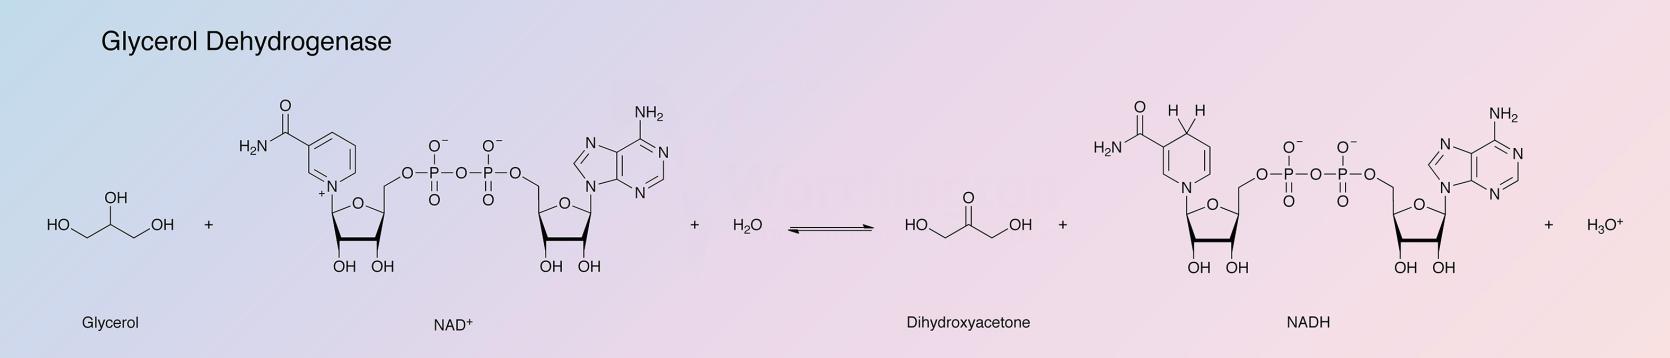 Glycerol Dehydrogenase Enzymatic Reaction